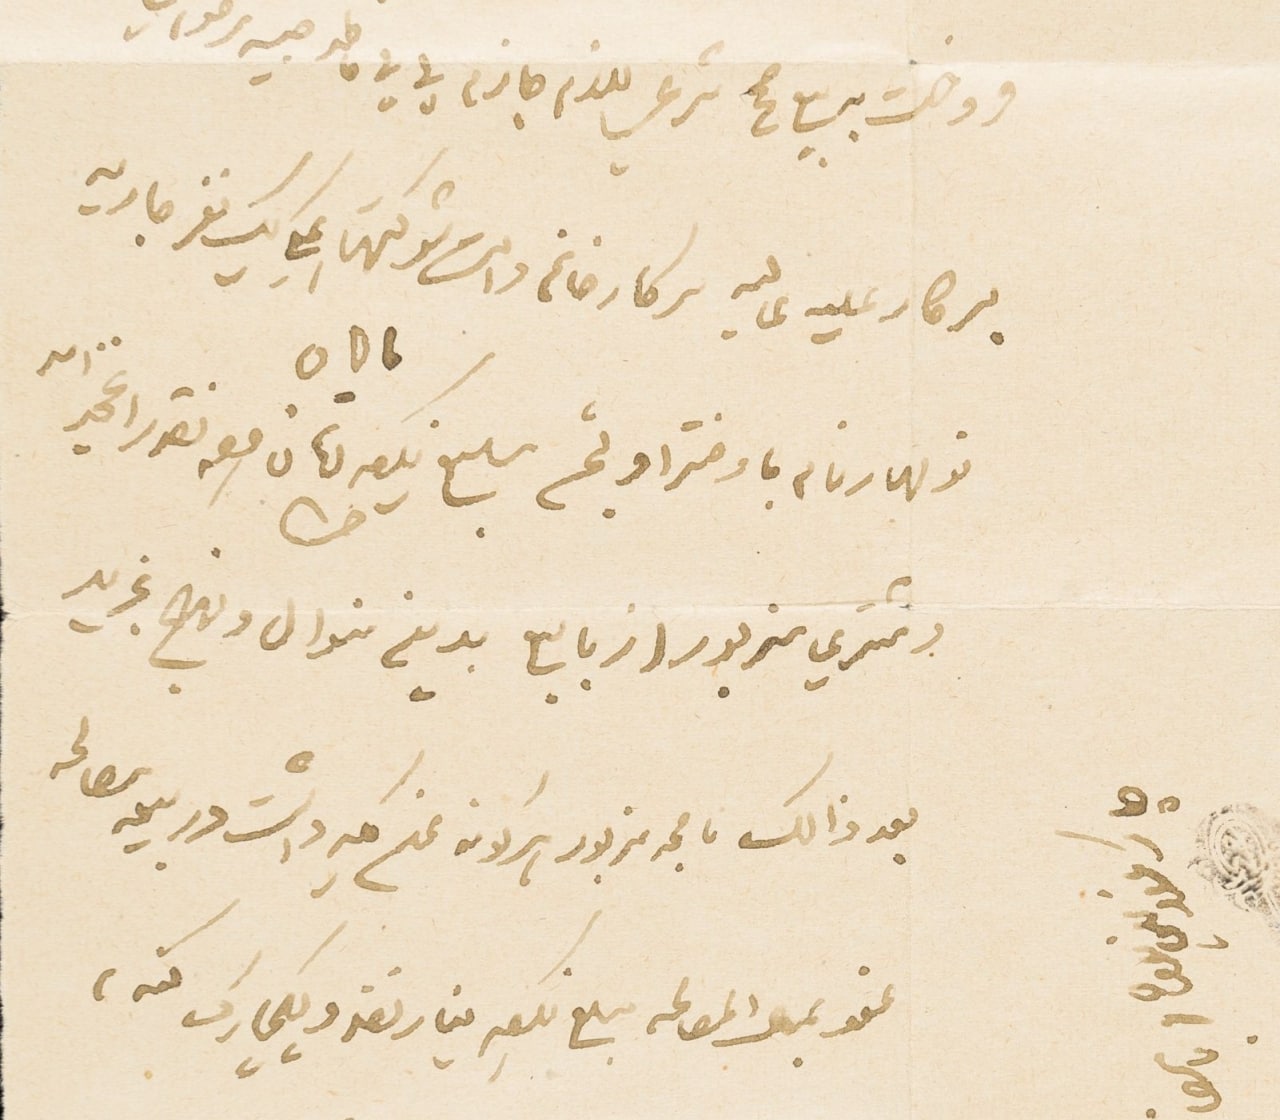 قیمت برده و کنیز در دوران قاجار؛ بر اساس اسناد تاریخی (+عکس)